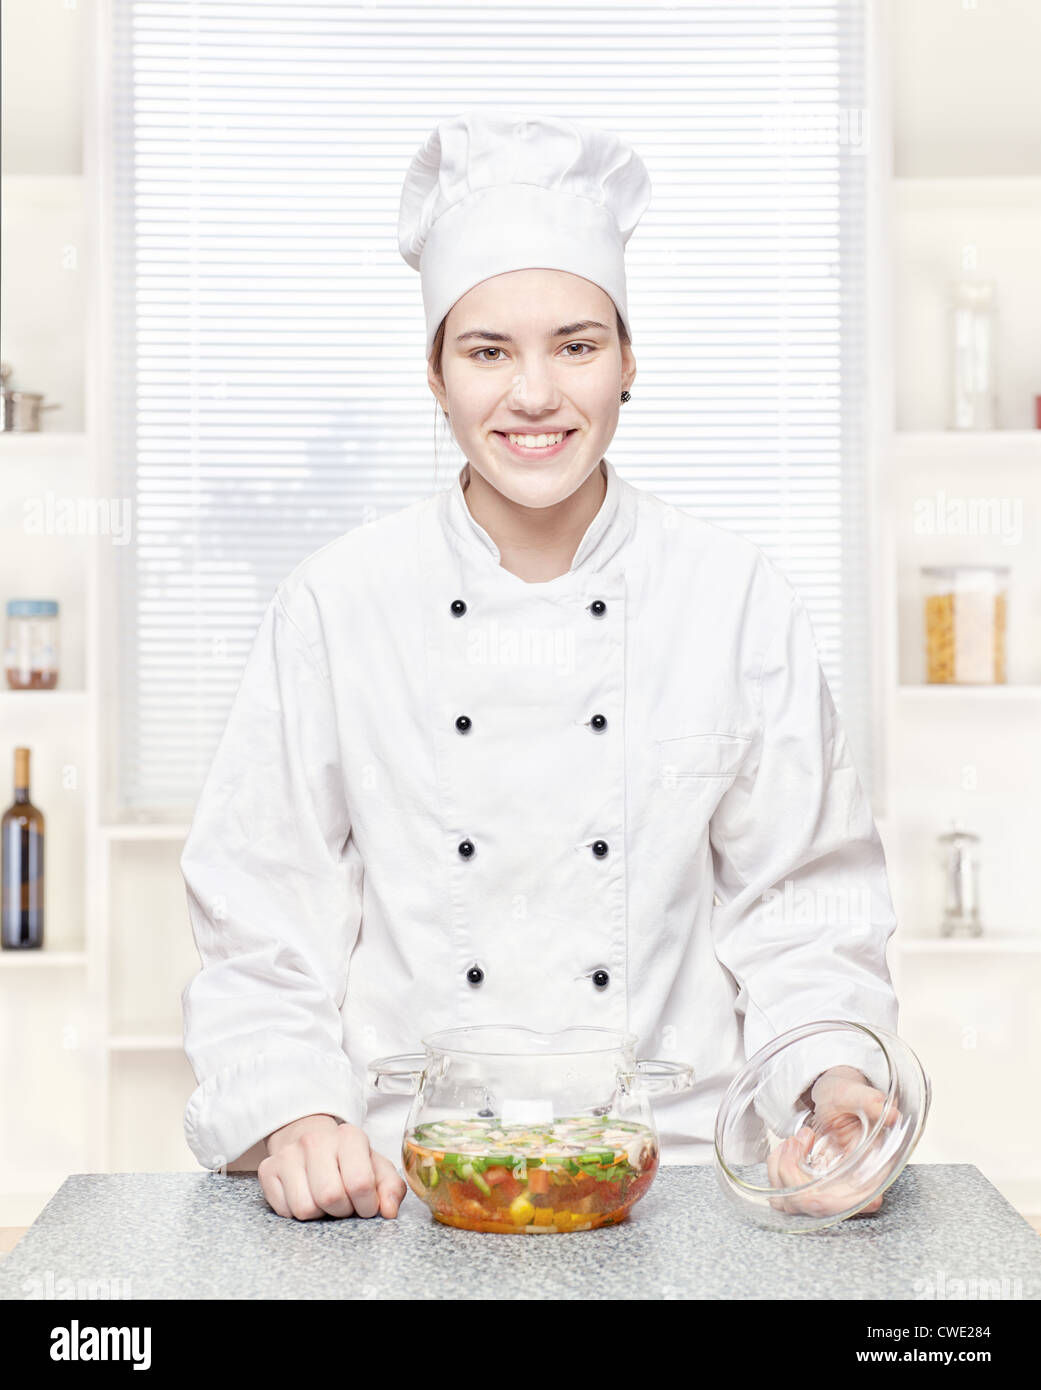 Koch in der Küche mit einer Suppe Gemüse im Glas Stockfoto